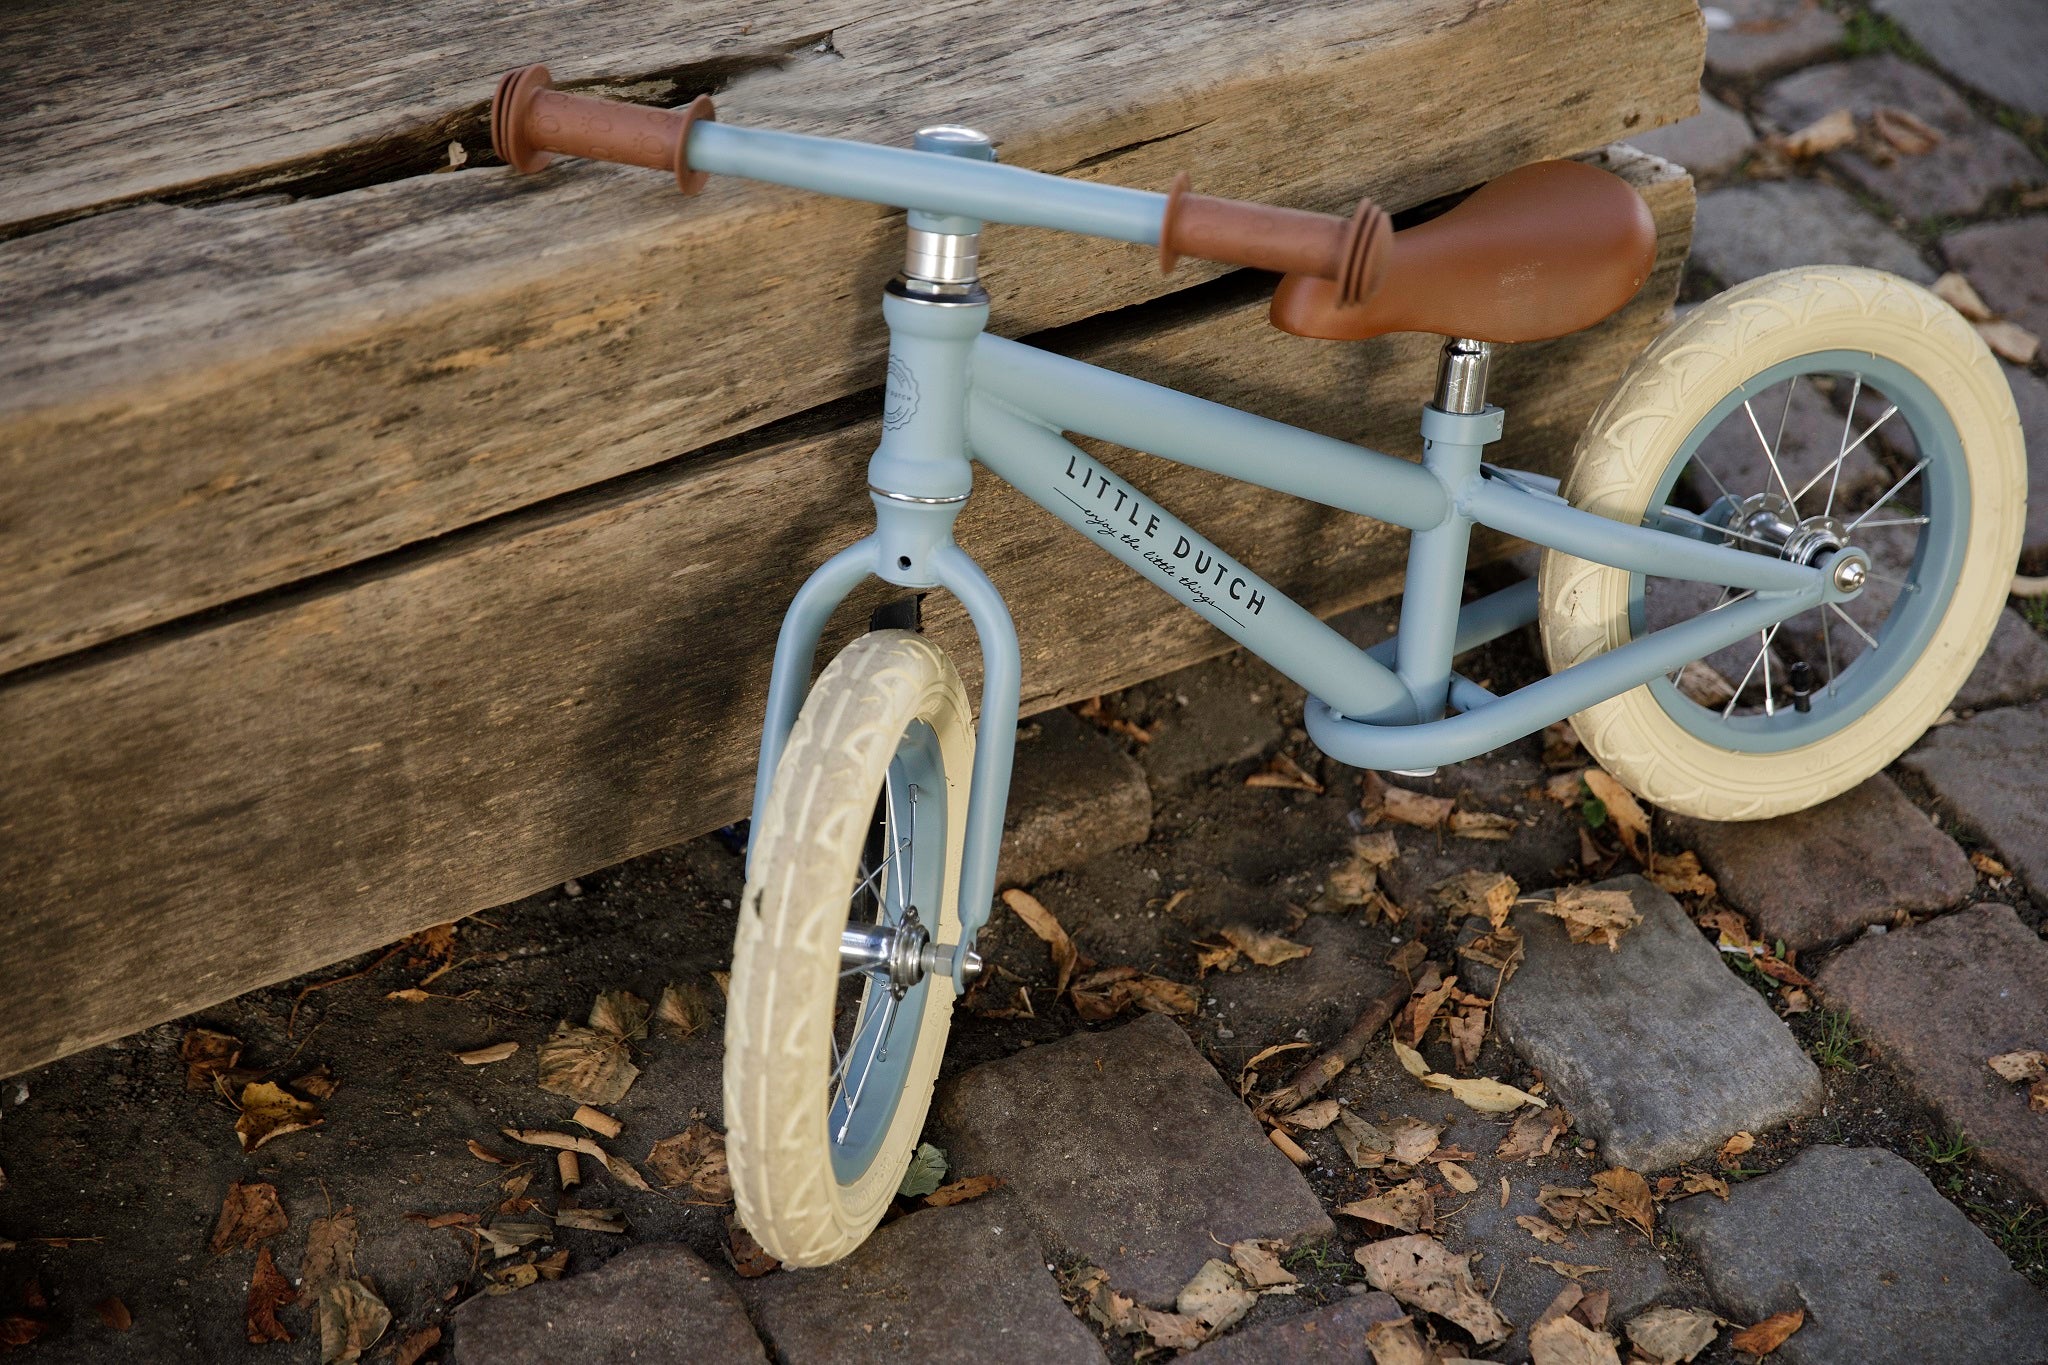 Little Dutch Balance Bike - Matte Blue